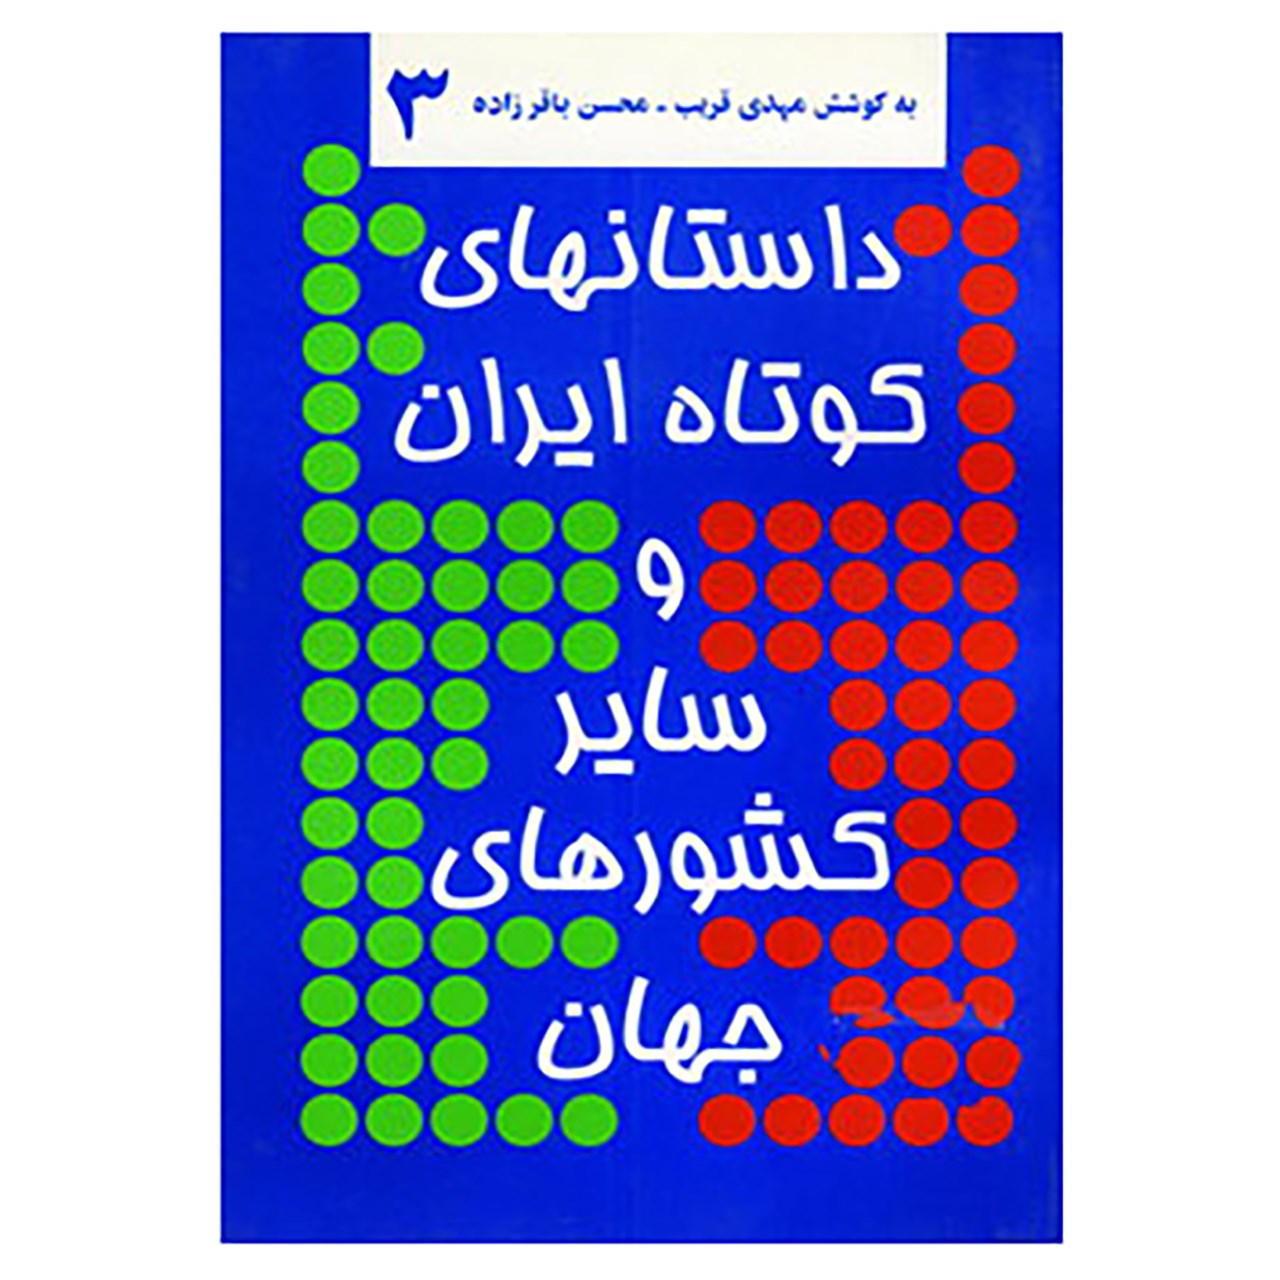 کتاب داستانهای کوتاه ایران و سایر کشورهای جهان 3 اثر صفدر تقی زاده